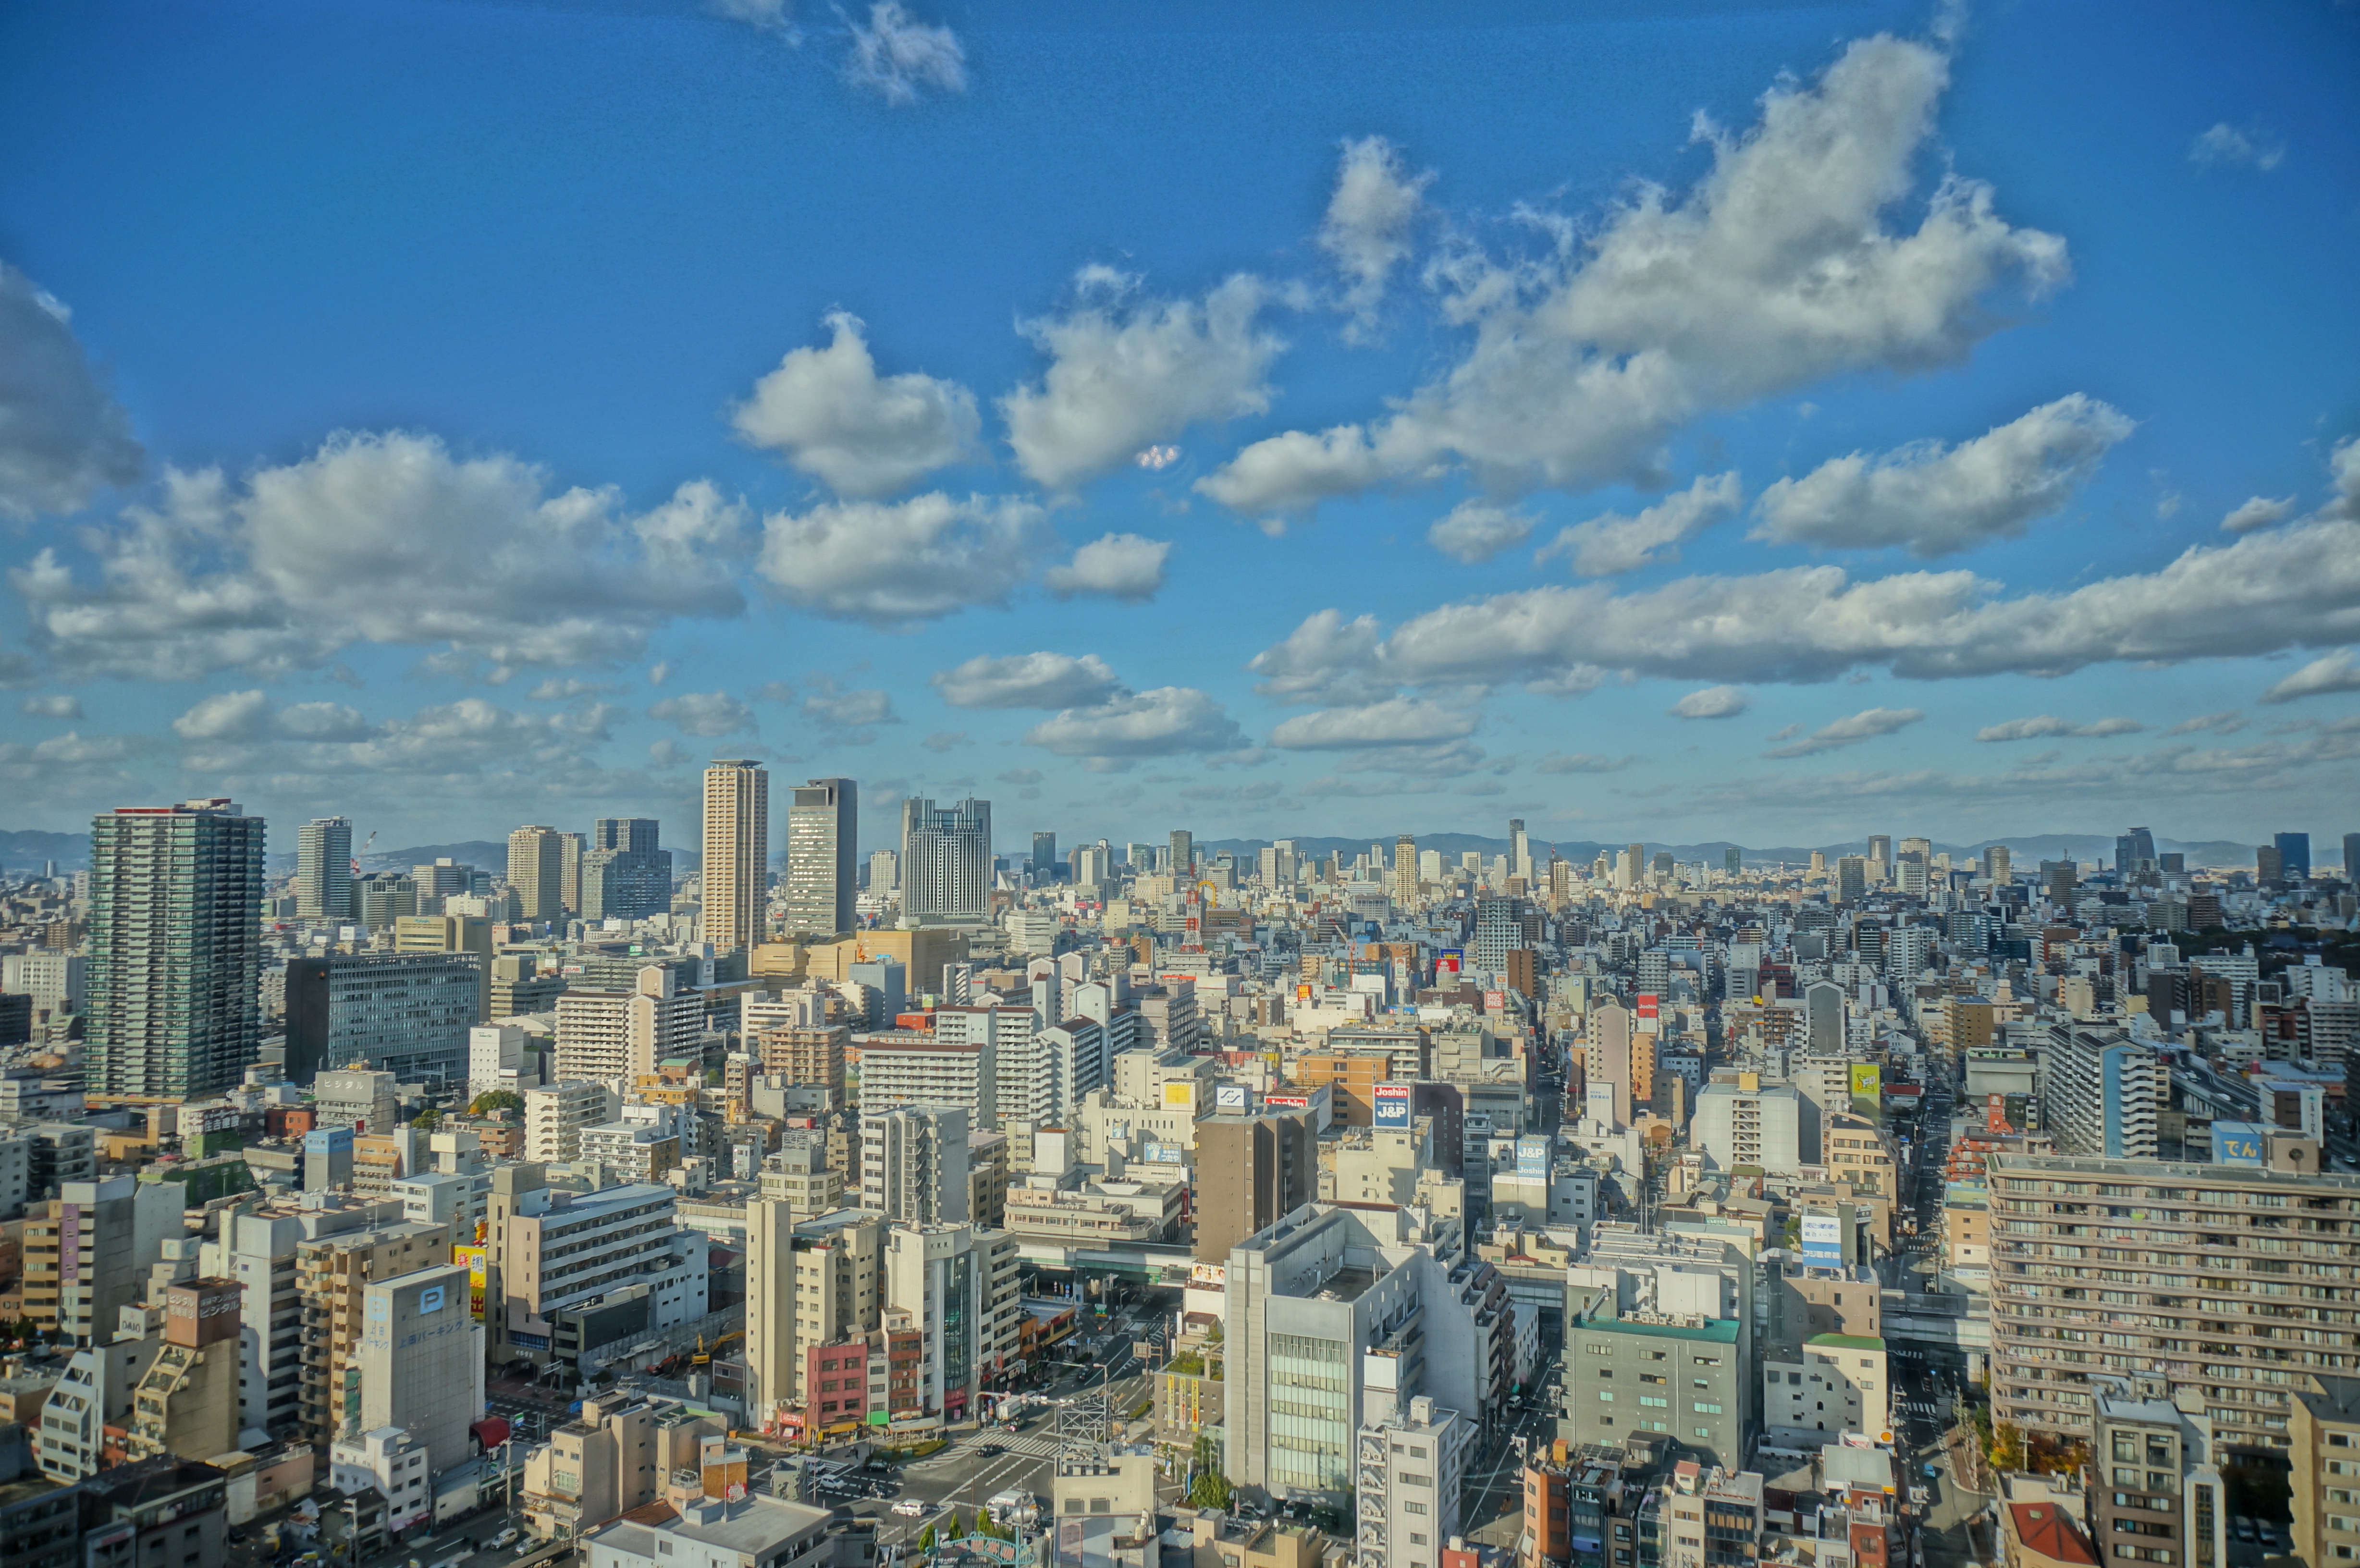 Cityscape view of Osaka, Japan image - Free stock photo - Public ...